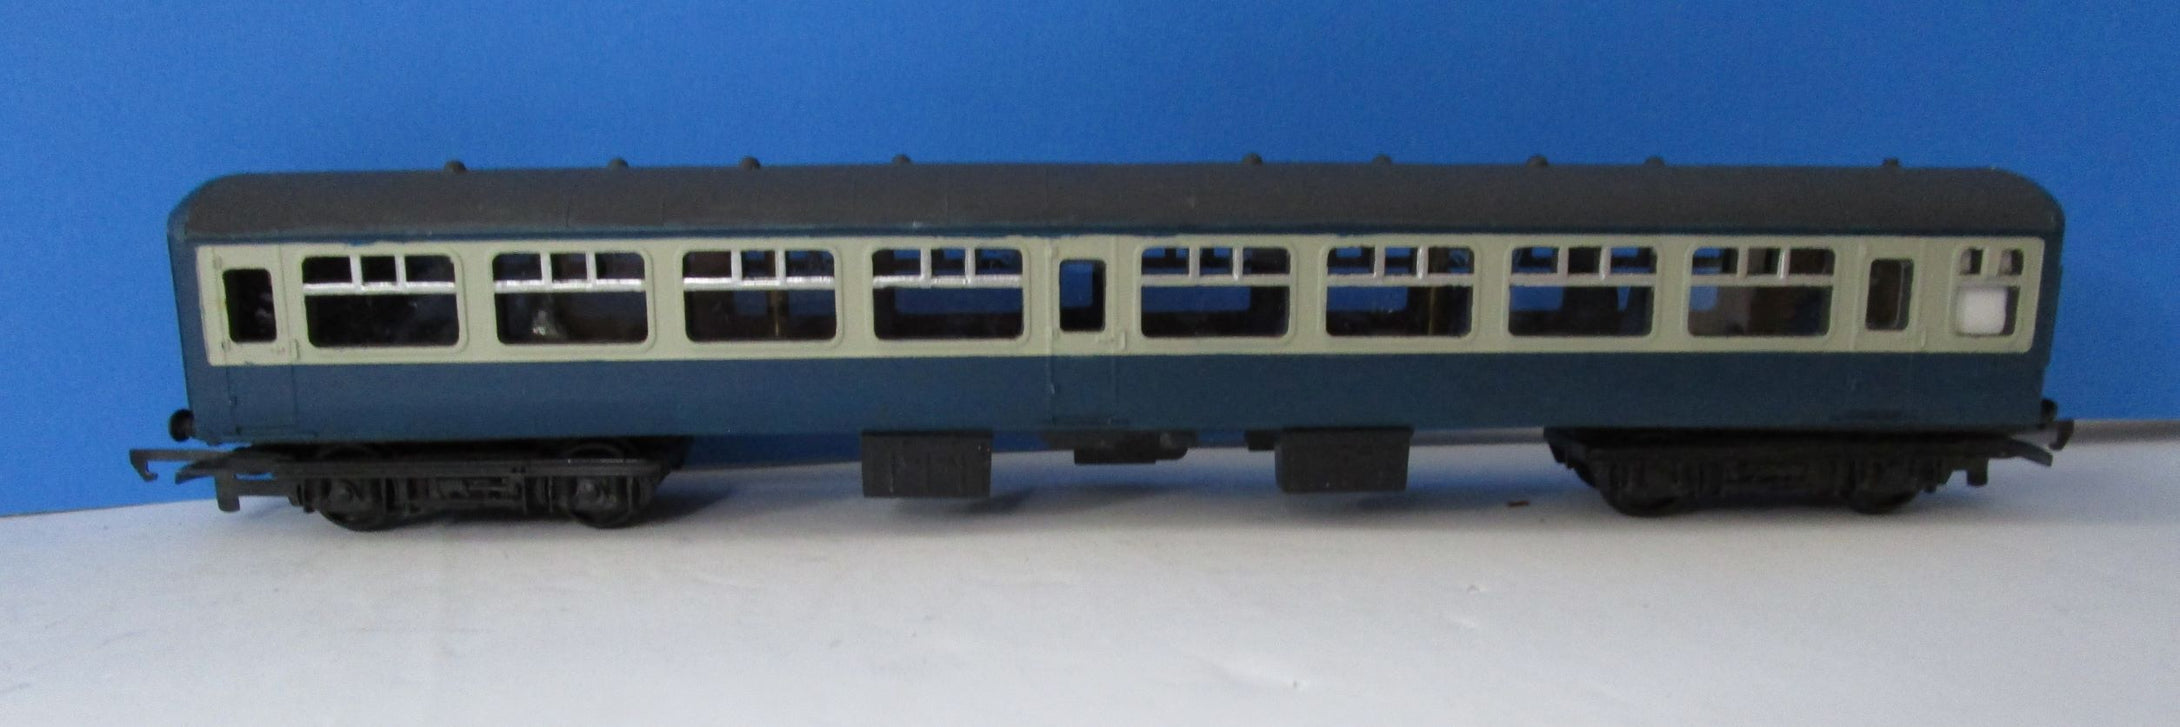 BMTC005 Hornby Mk2 TSO blue grey - Unboxed